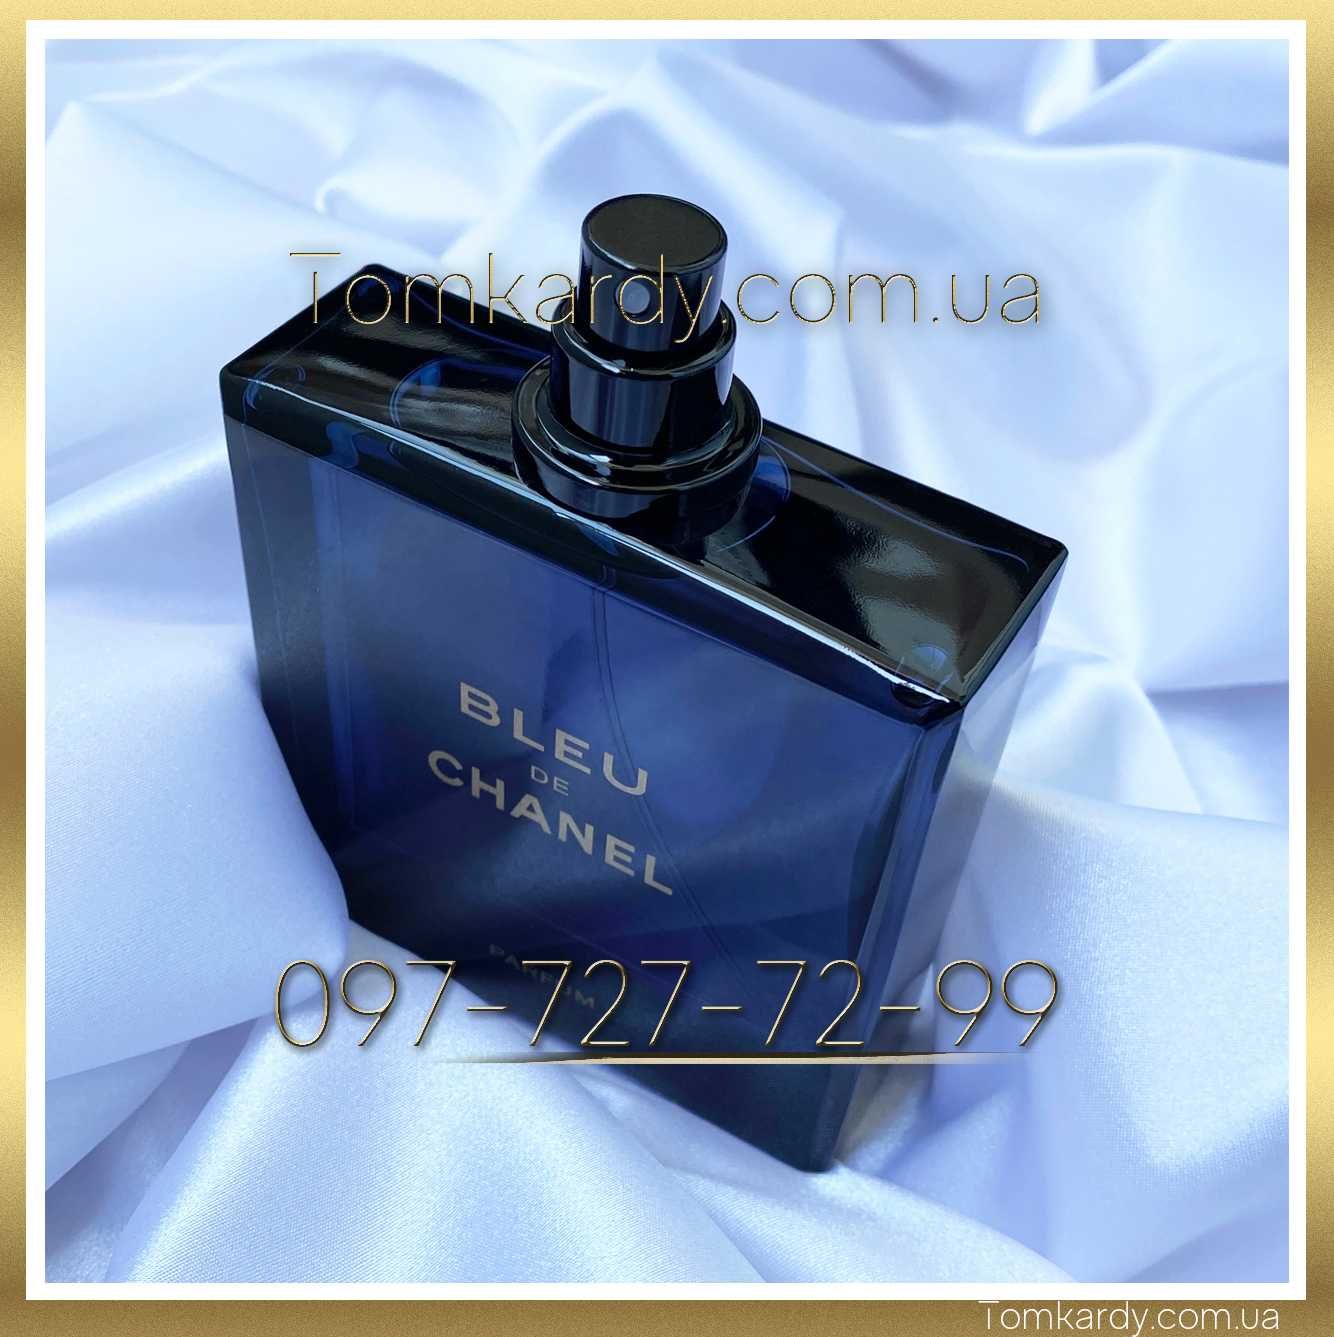 Мужские духи Bleu de Chanel Parfum 100 ml. Блю де Шанель Парфюм